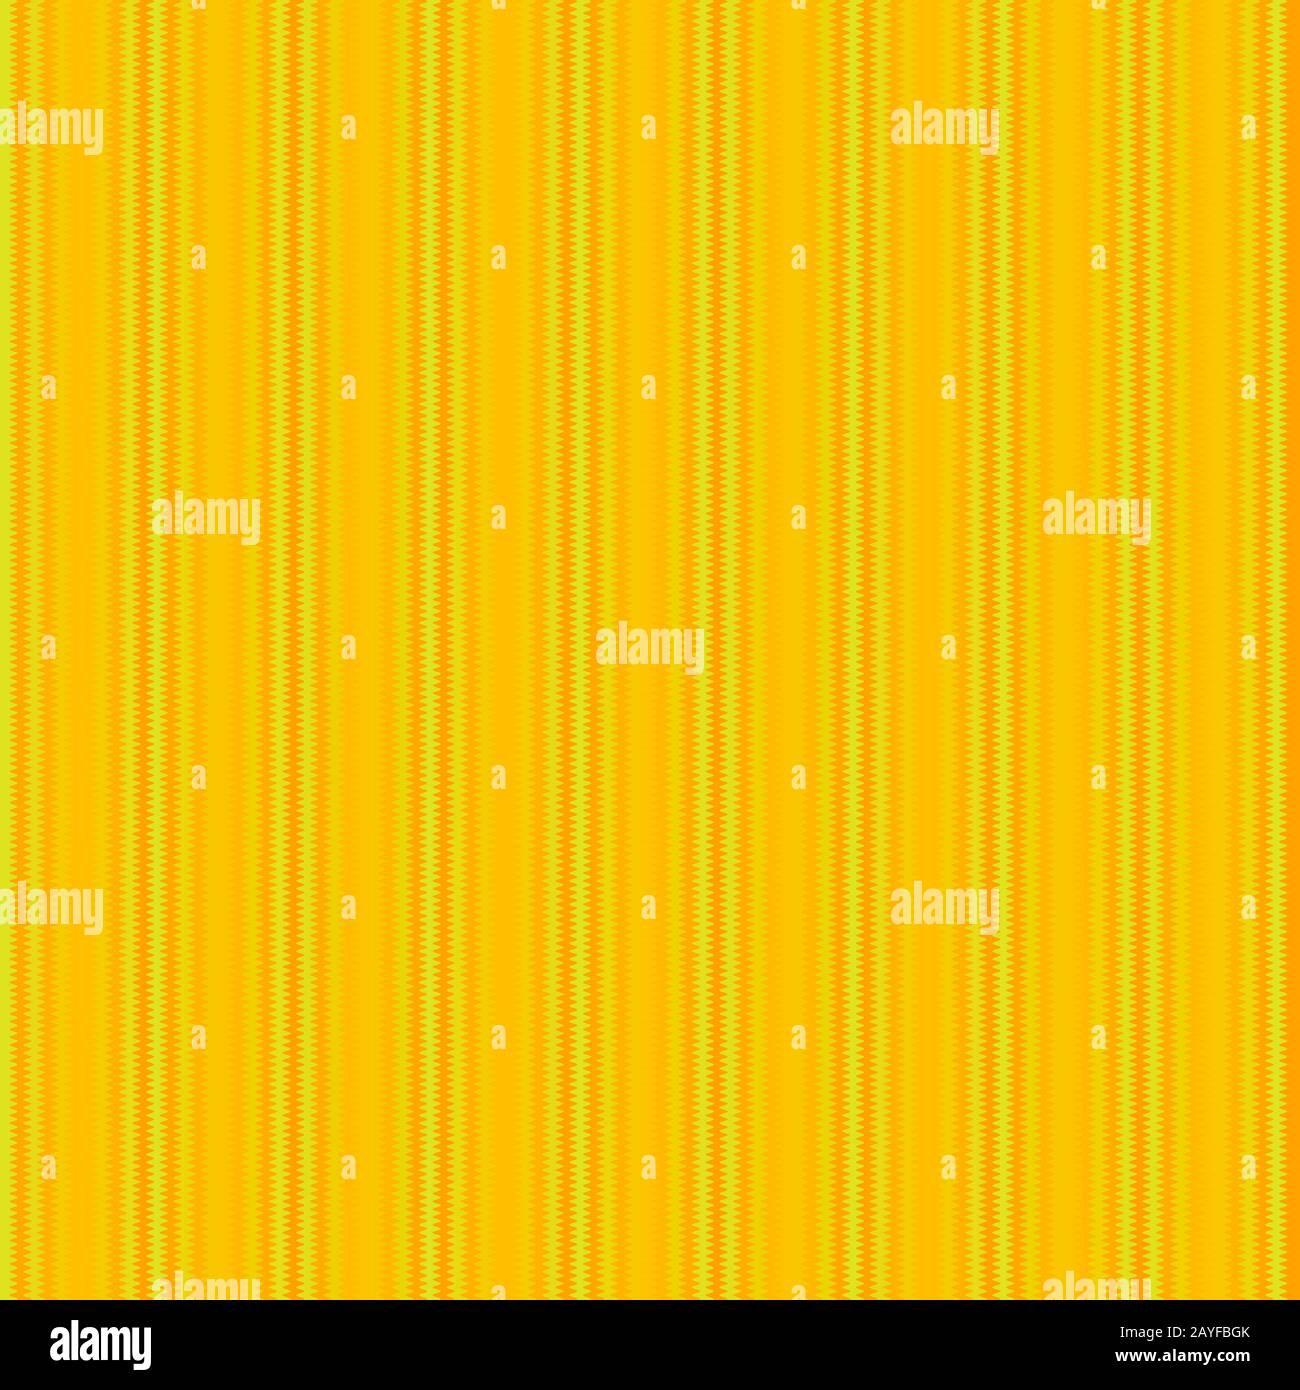 strisce in forma d'onda a zig-zag nei colori arancione e giallo, disposte verticalmente Foto Stock